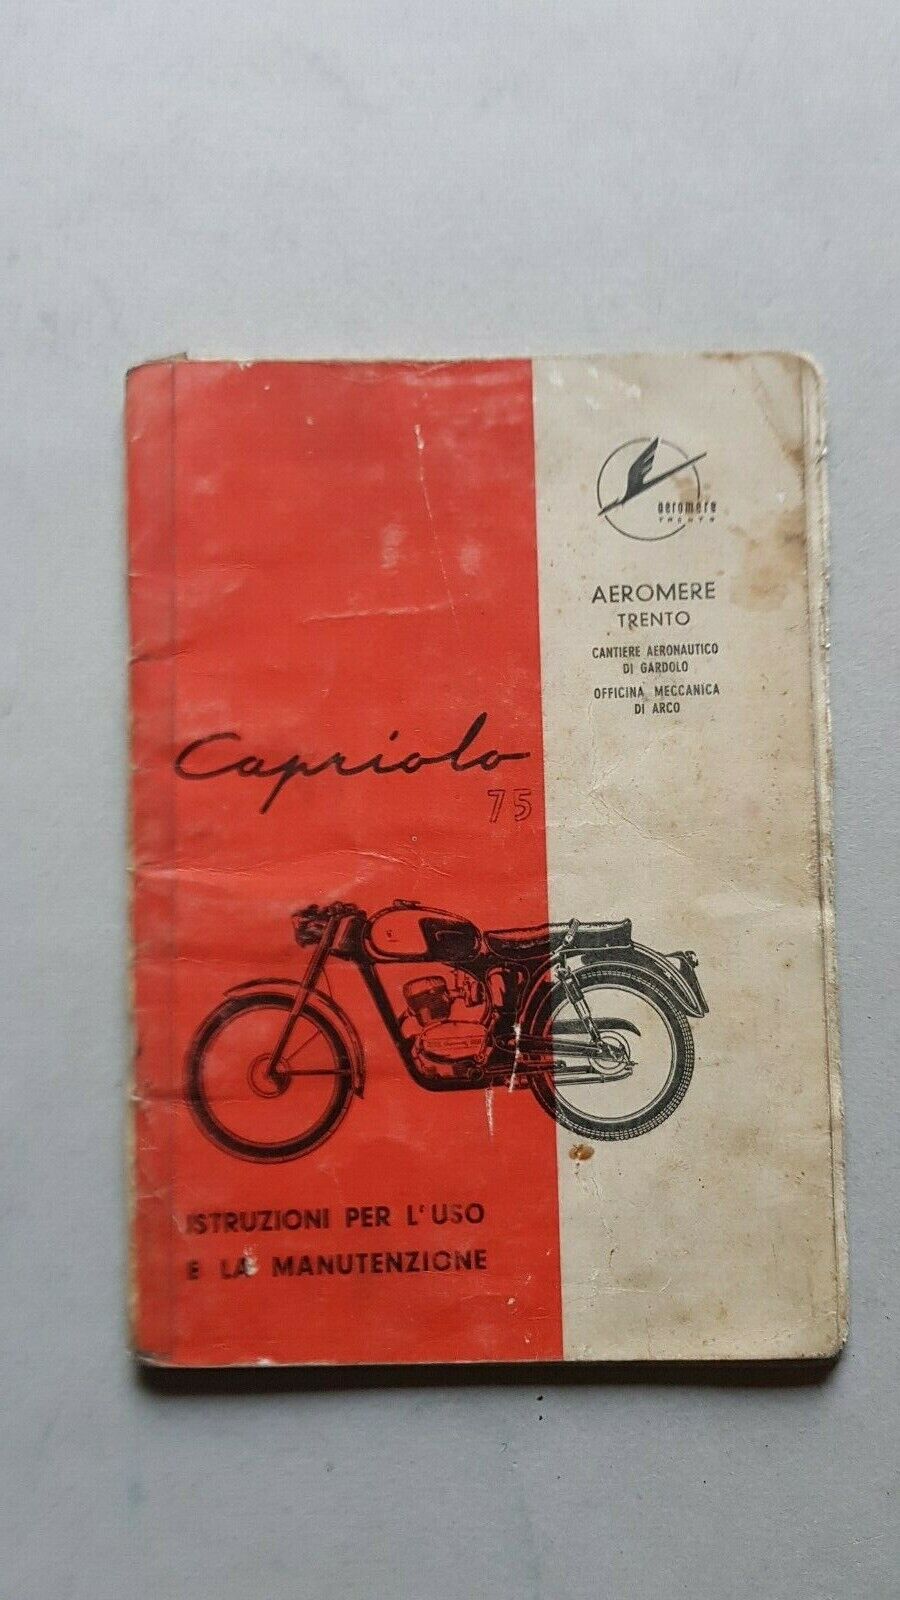 Aeromere Capriolo 75 1958 manuale uso manutenzione moto originale owner's manual